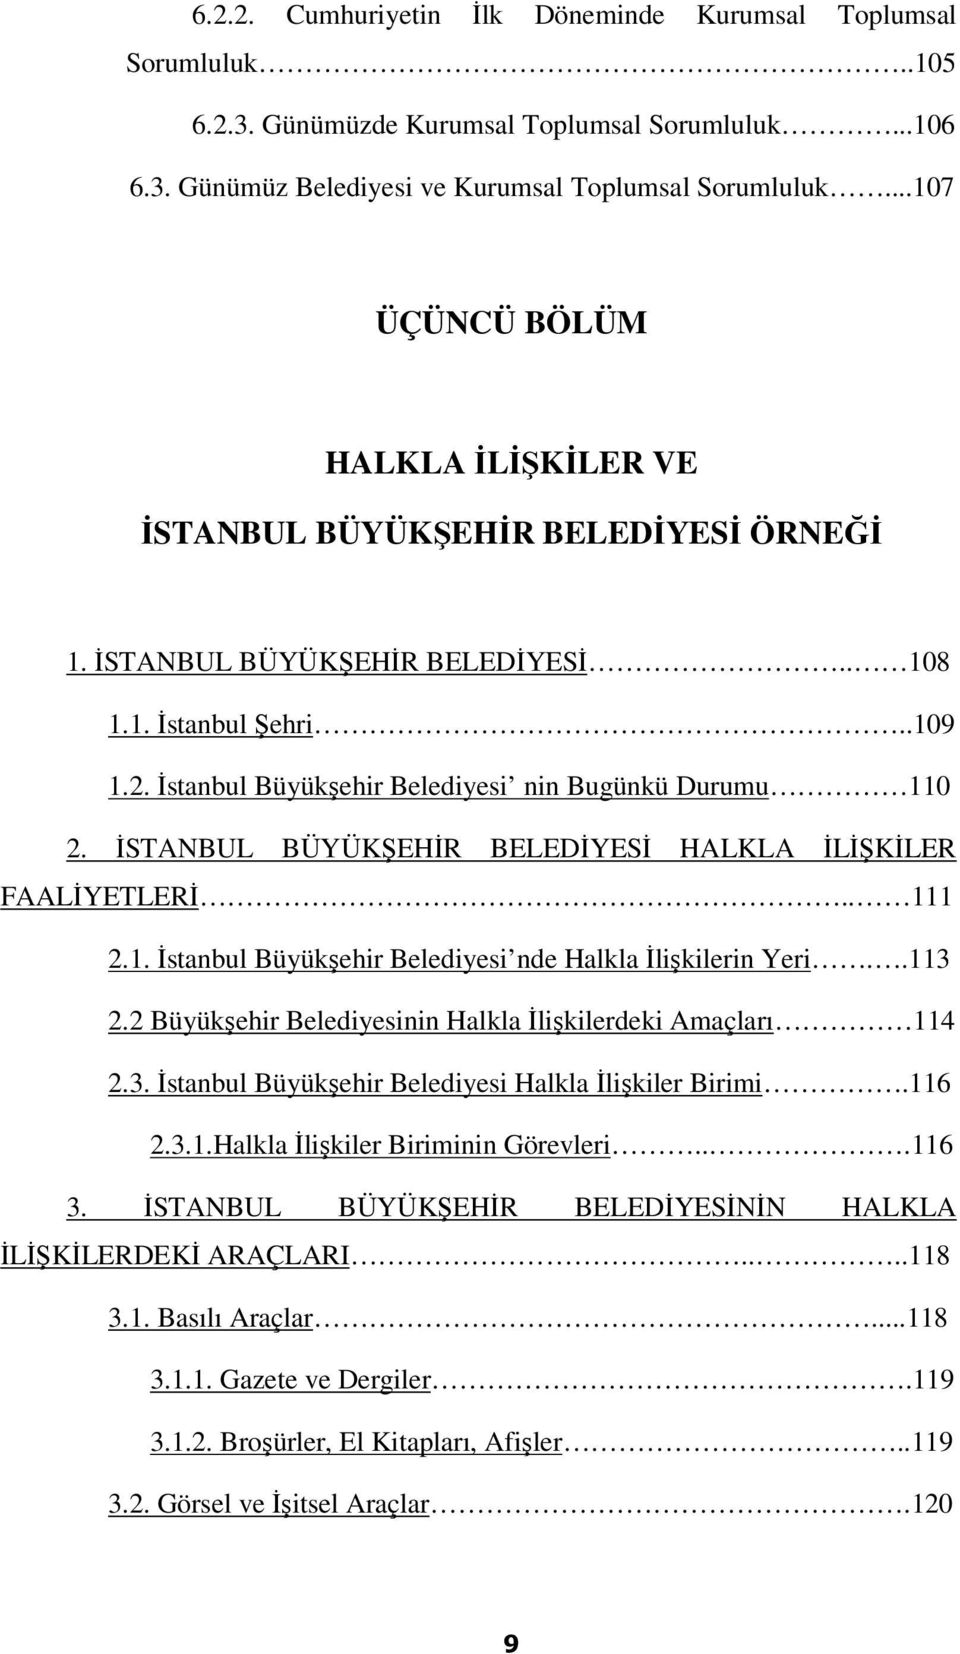 İstanbul Büyükşehir Belediyesi nin Bugünkü Durumu 110 2. İSTANBUL BÜYÜKŞEHİR BELEDİYESİ HALKLA İLİŞKİLER FAALİYETLERİ.. 111 2.1. İstanbul Büyükşehir Belediyesi nde Halkla İlişkilerin Yeri..113 2.